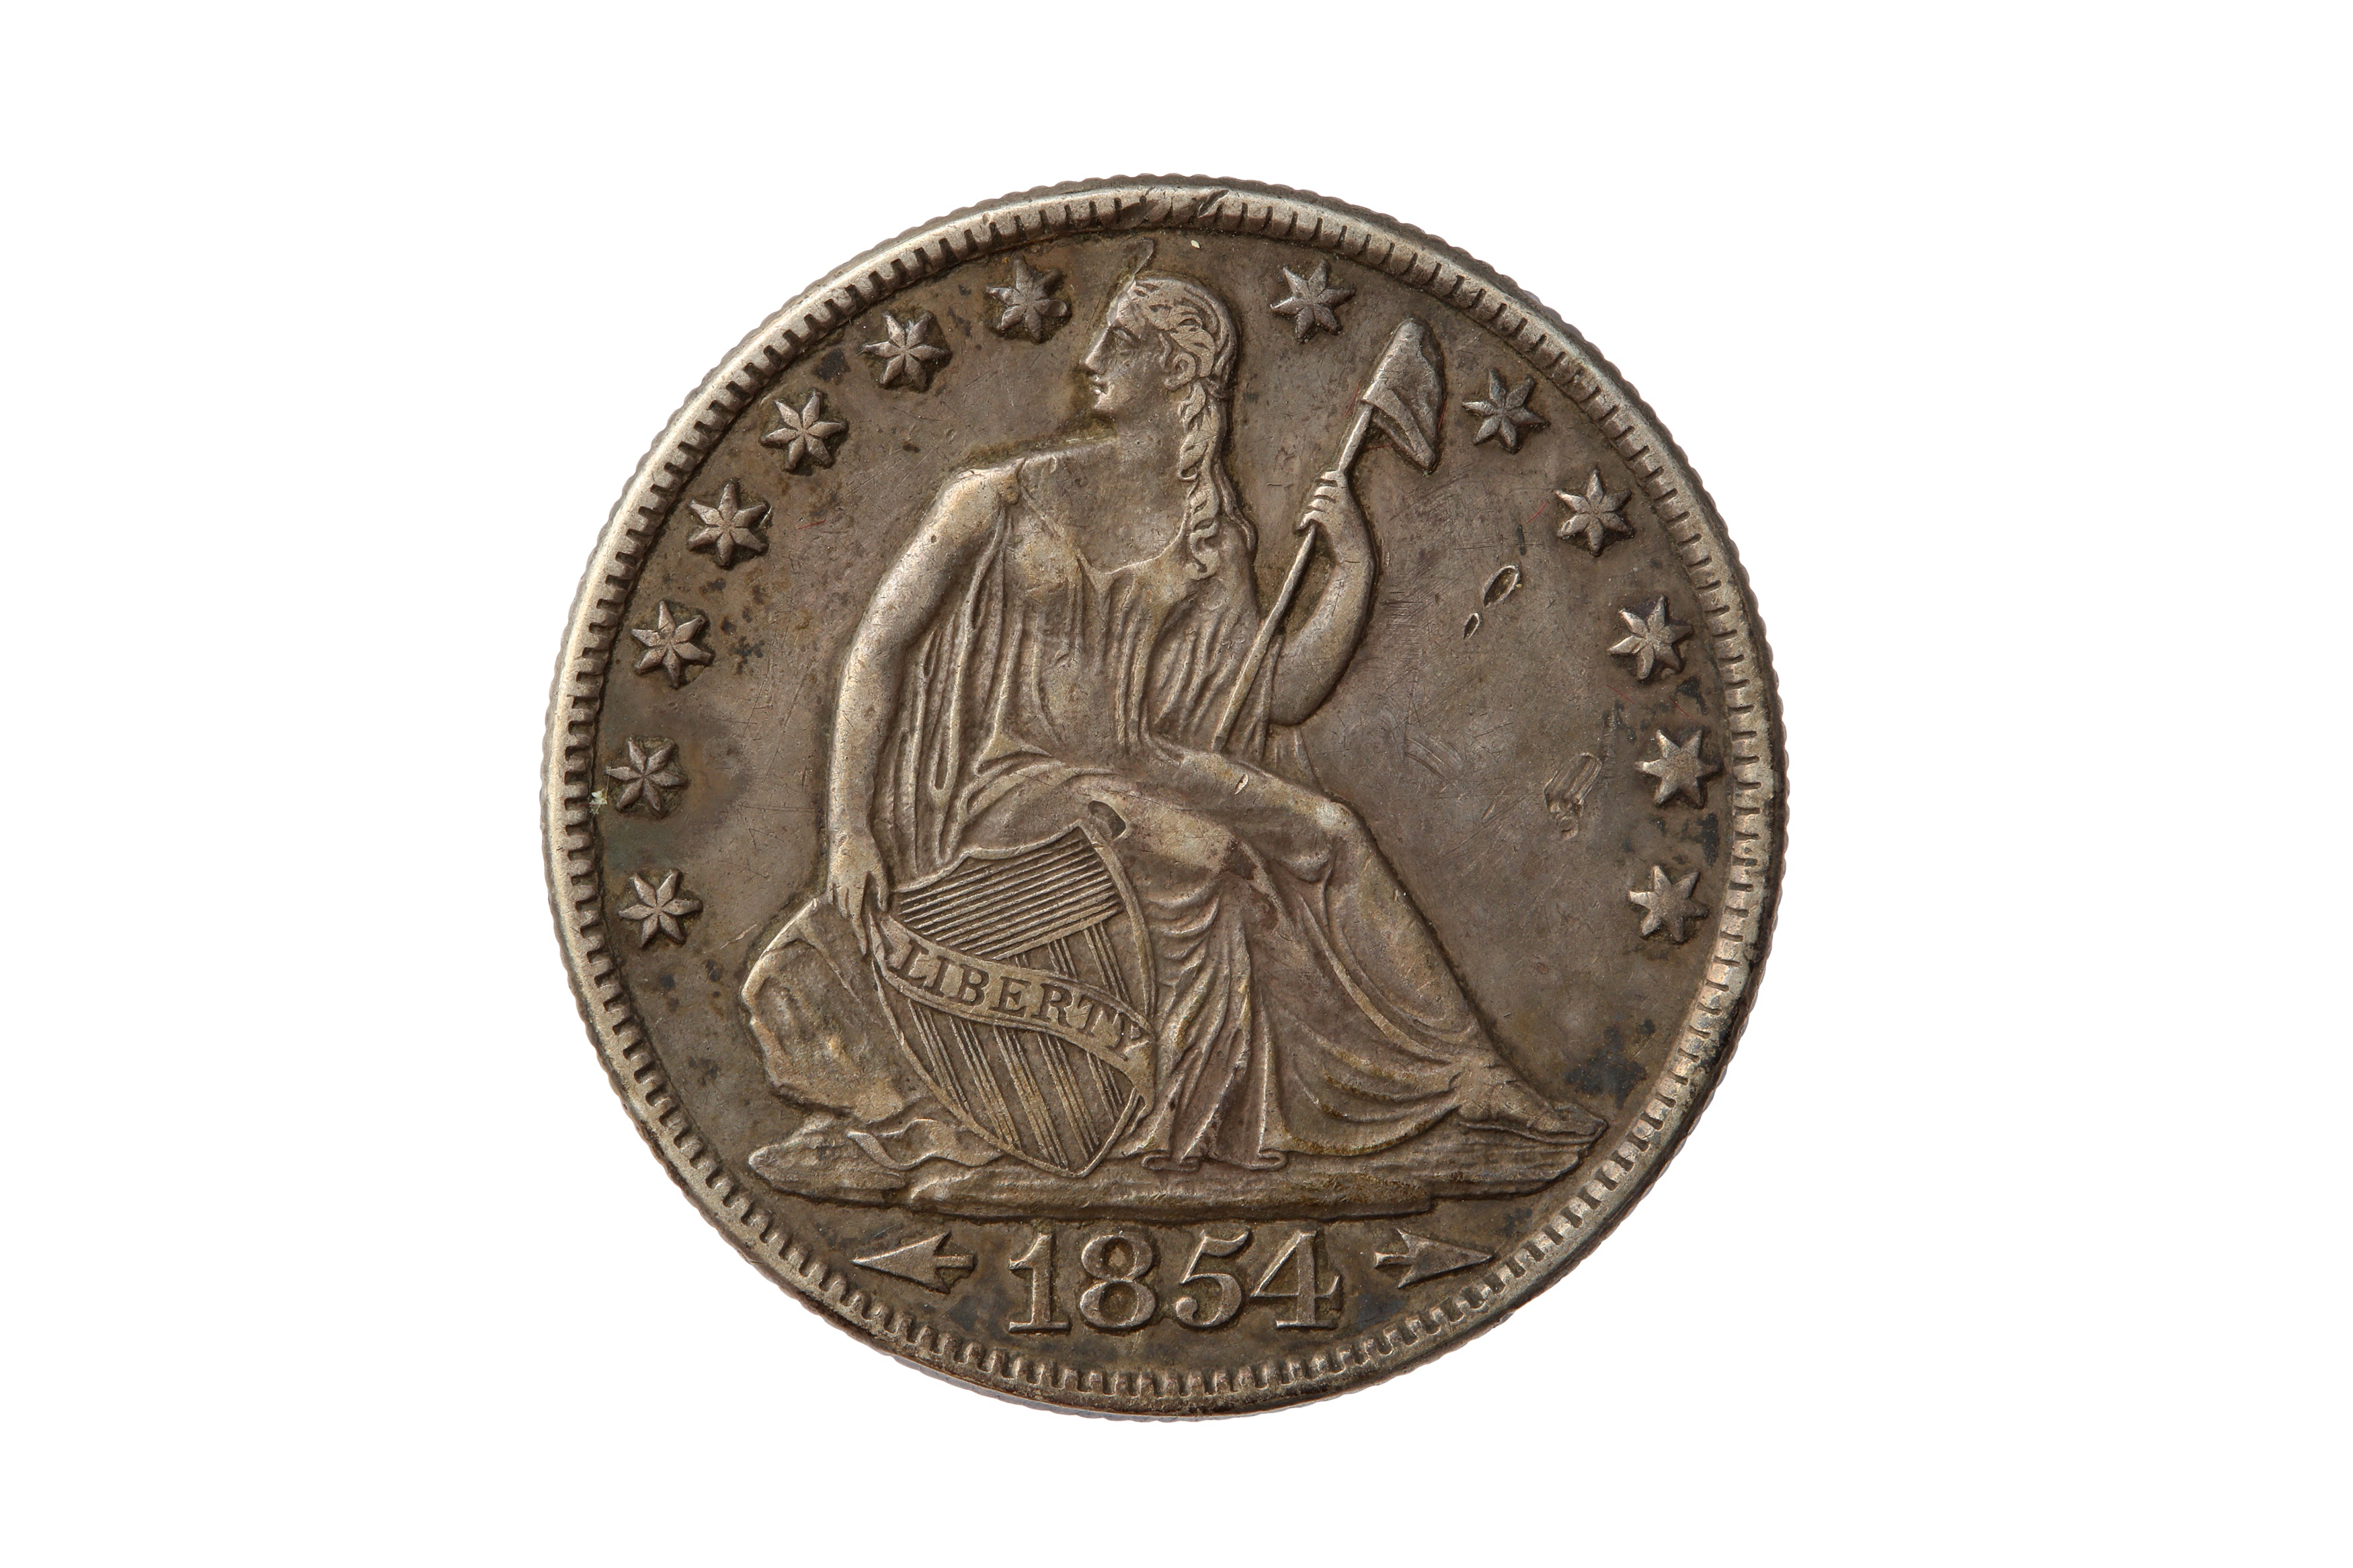 USA, 1854-O 50 CENTS/HALF DOLLAR.